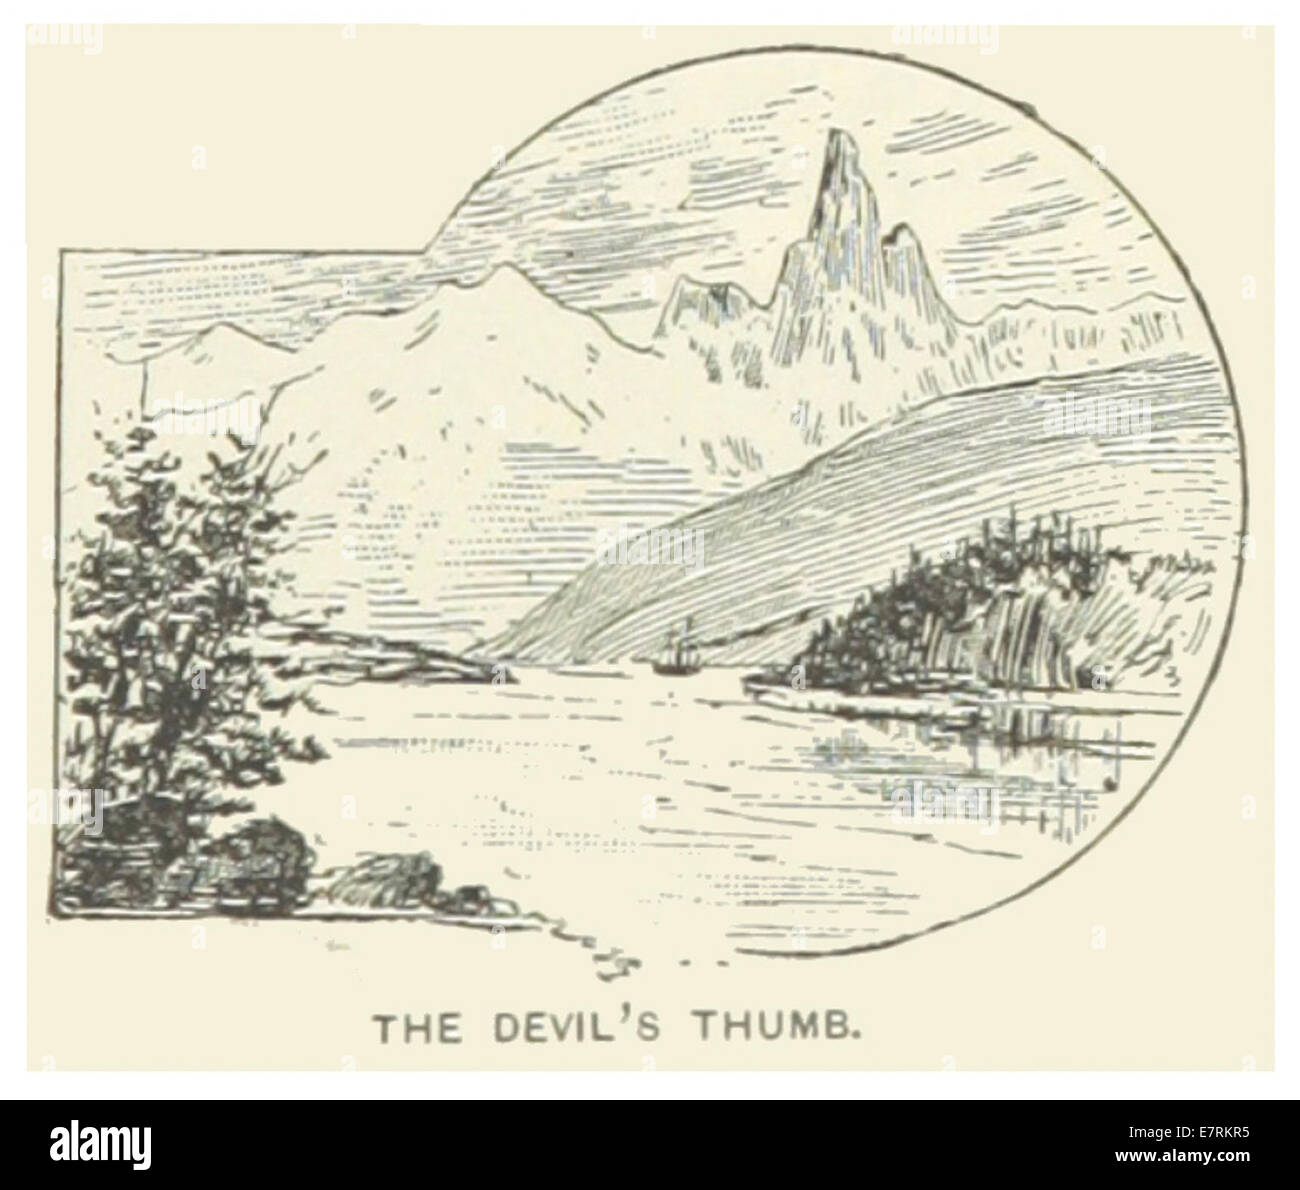 US-AK(1891) p049 THE DEVIL'S THUMB Stock Photo - Alamy